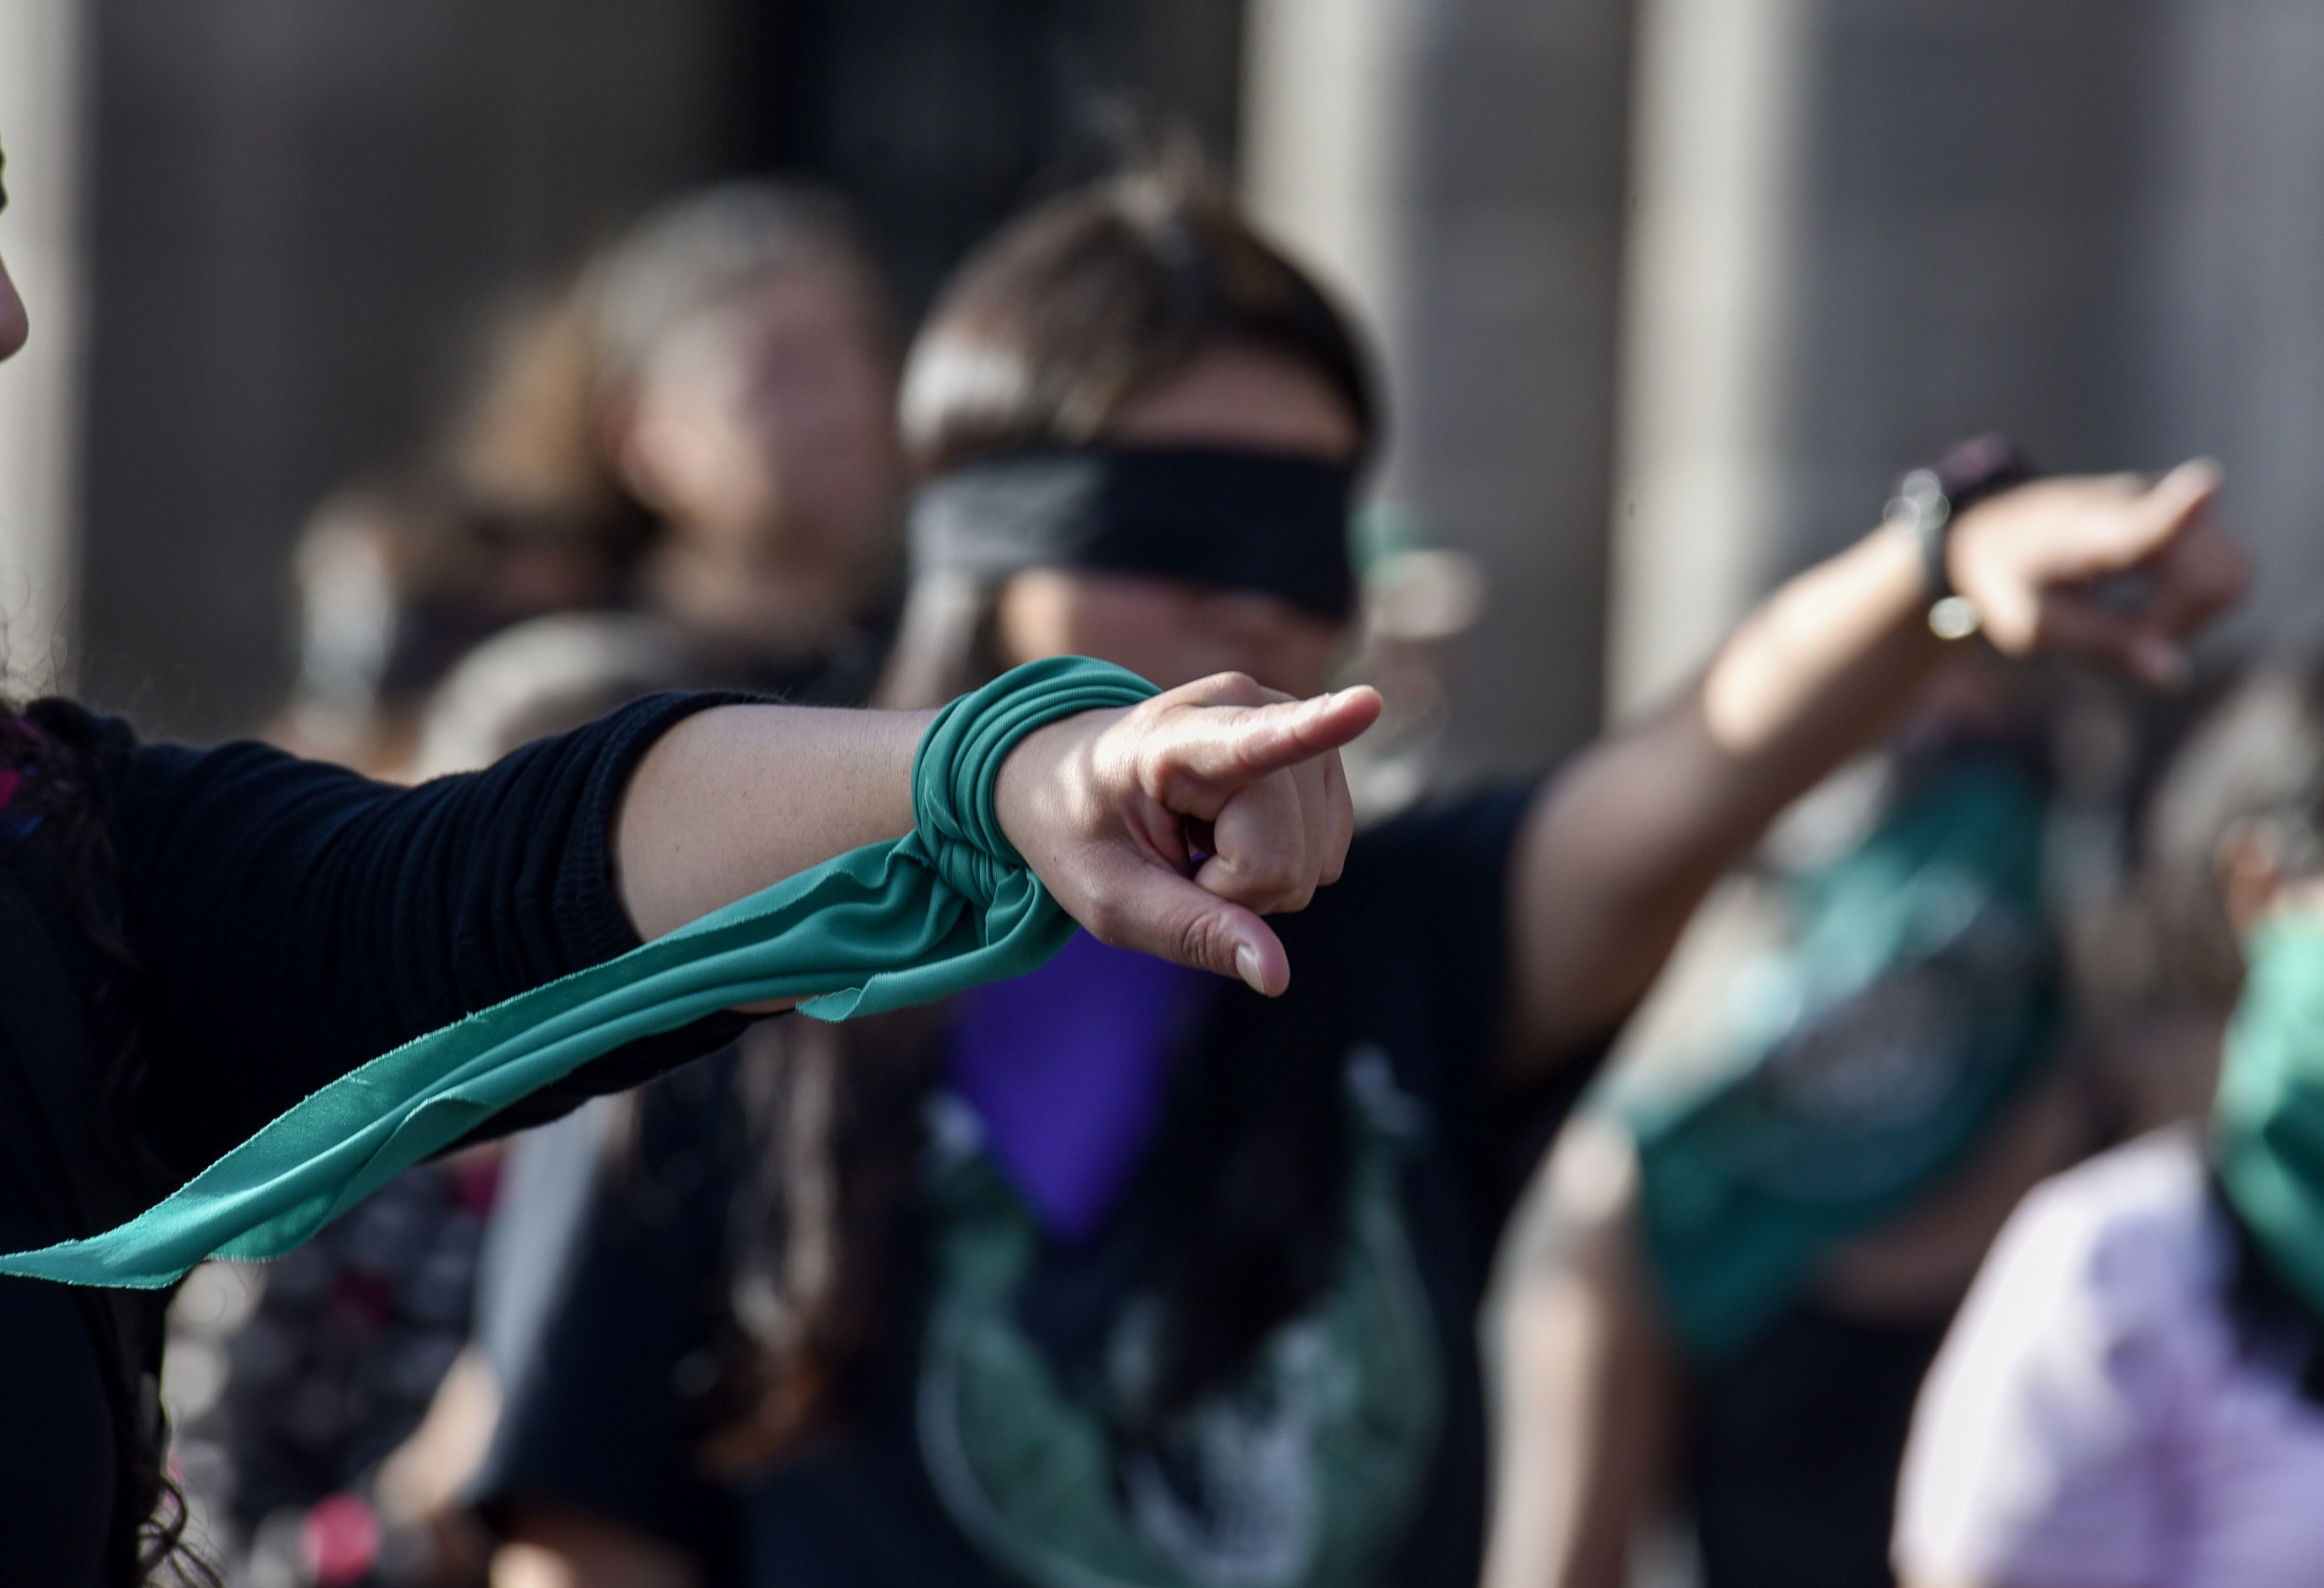 Toluca, Estado de México, mujeres realizaron el performance “Un violador en tu camino” frente a Palacio de Gobierno de la entidad mexiquense
(Foto: Crisanta Espinos/cuartoscuro)